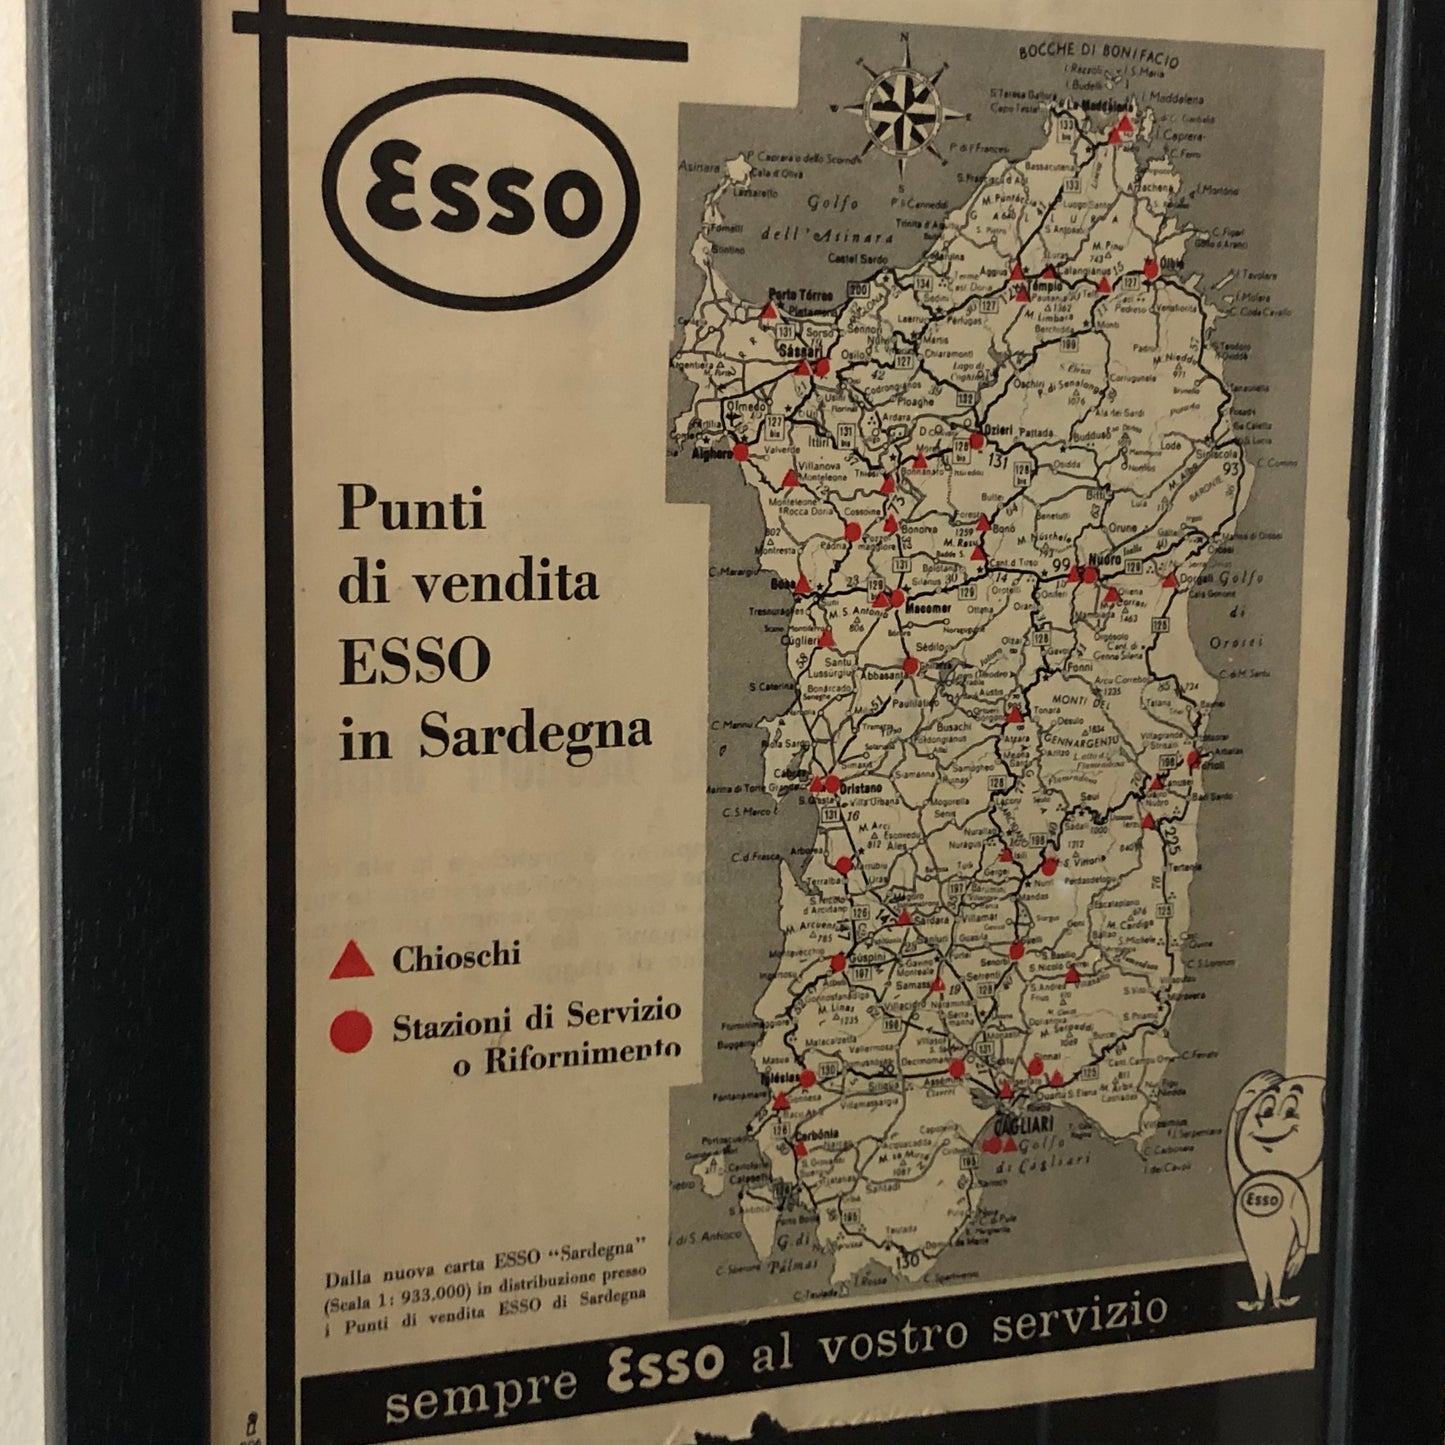 Esso, Pubblicità Anno 1960 Punti Vendita - Stazioni di Servizio Esso in Sardegna con Didascalia in Italiano